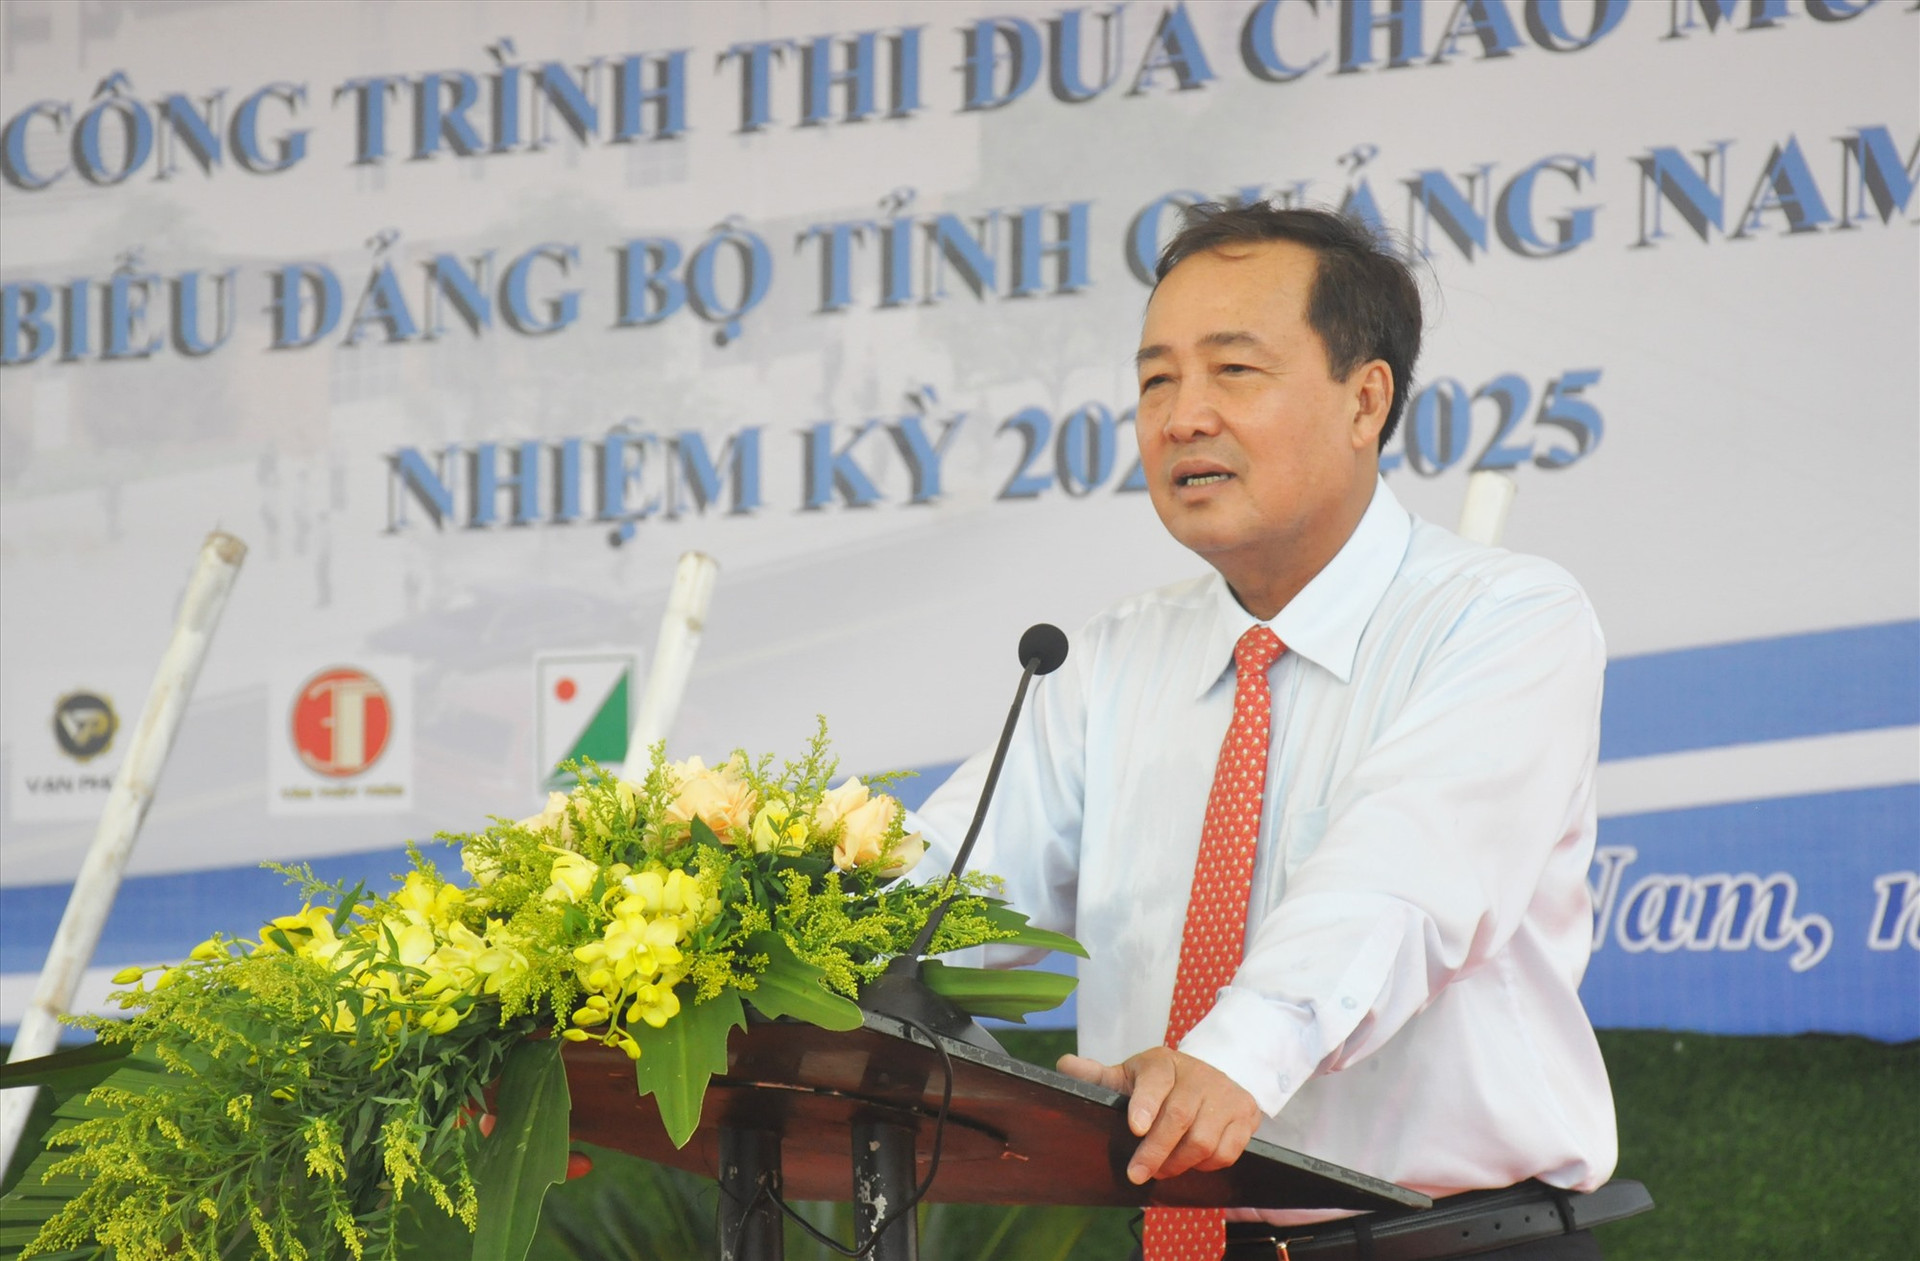 Phó Chủ tịch Thường trực UBND tỉnh Huỳnh Khánh Toàn phát biểu tại lễ khởi công. Ảnh: N.Đ